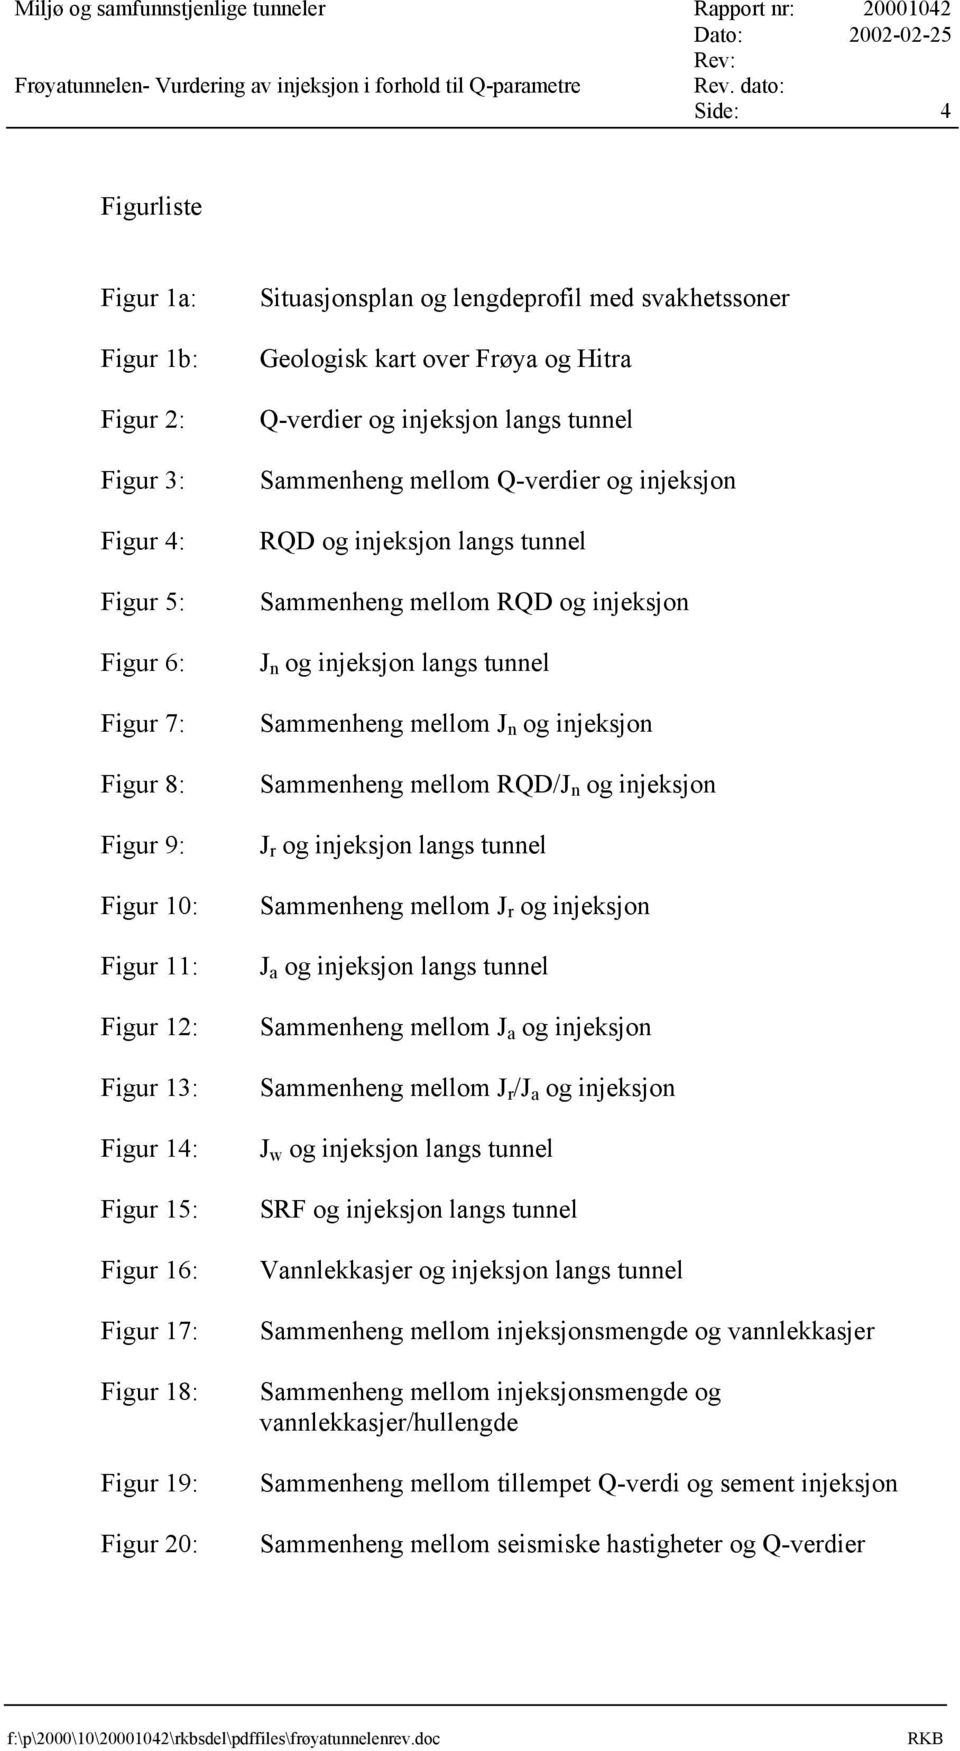 Figur 18: Figur 19: Figur 2: Situasjonsplan og lengdeprofil med svakhetssoner Geologisk kart over Frøya og Hitra Q-verdier og injeksjon langs tunnel Sammenheng mellom Q-verdier og injeksjon RQD og